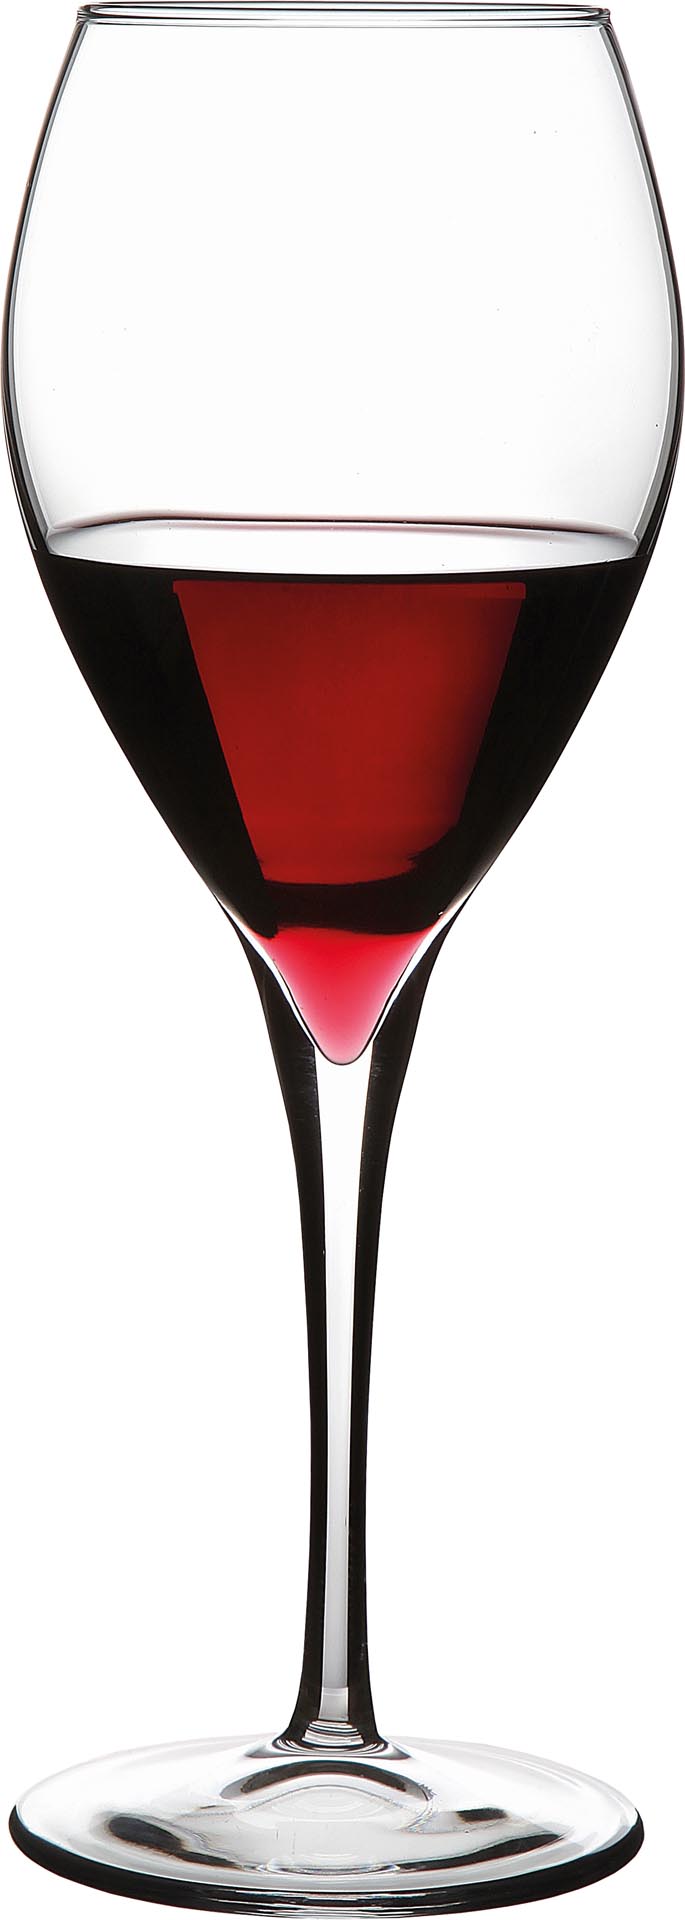 Das Rotweinglas ist ein Trinkgefäß, das durch seine Form auf den Genuss von Rotwein abgestimmt ist. Es besteht aus einem Kelch, einem Stiel und einer Bodenplatte, die einen sicheren Stand gewährleistet. Das Rotweinglas unterscheidet sich vom Weißweinglas durch seine bauchige Form, das größere Volumen und den größeren Durchmesser des Glasrandes. Die Form des Glases bestimmt die Wahrnehmung von Geschmack, Geruch und Textur des Weines. Die unterschiedlichen Formen eines Rotweinglases lassen die weintypischen Charakterzüge so optimal zur Geltung kommen. Ein Rotweinglas sollte übrigens möglichst dünnwandig sein damit der Geschmack des Weines nicht durch die Eigentemperatur des Glases verfälscht wird.&nbsp;